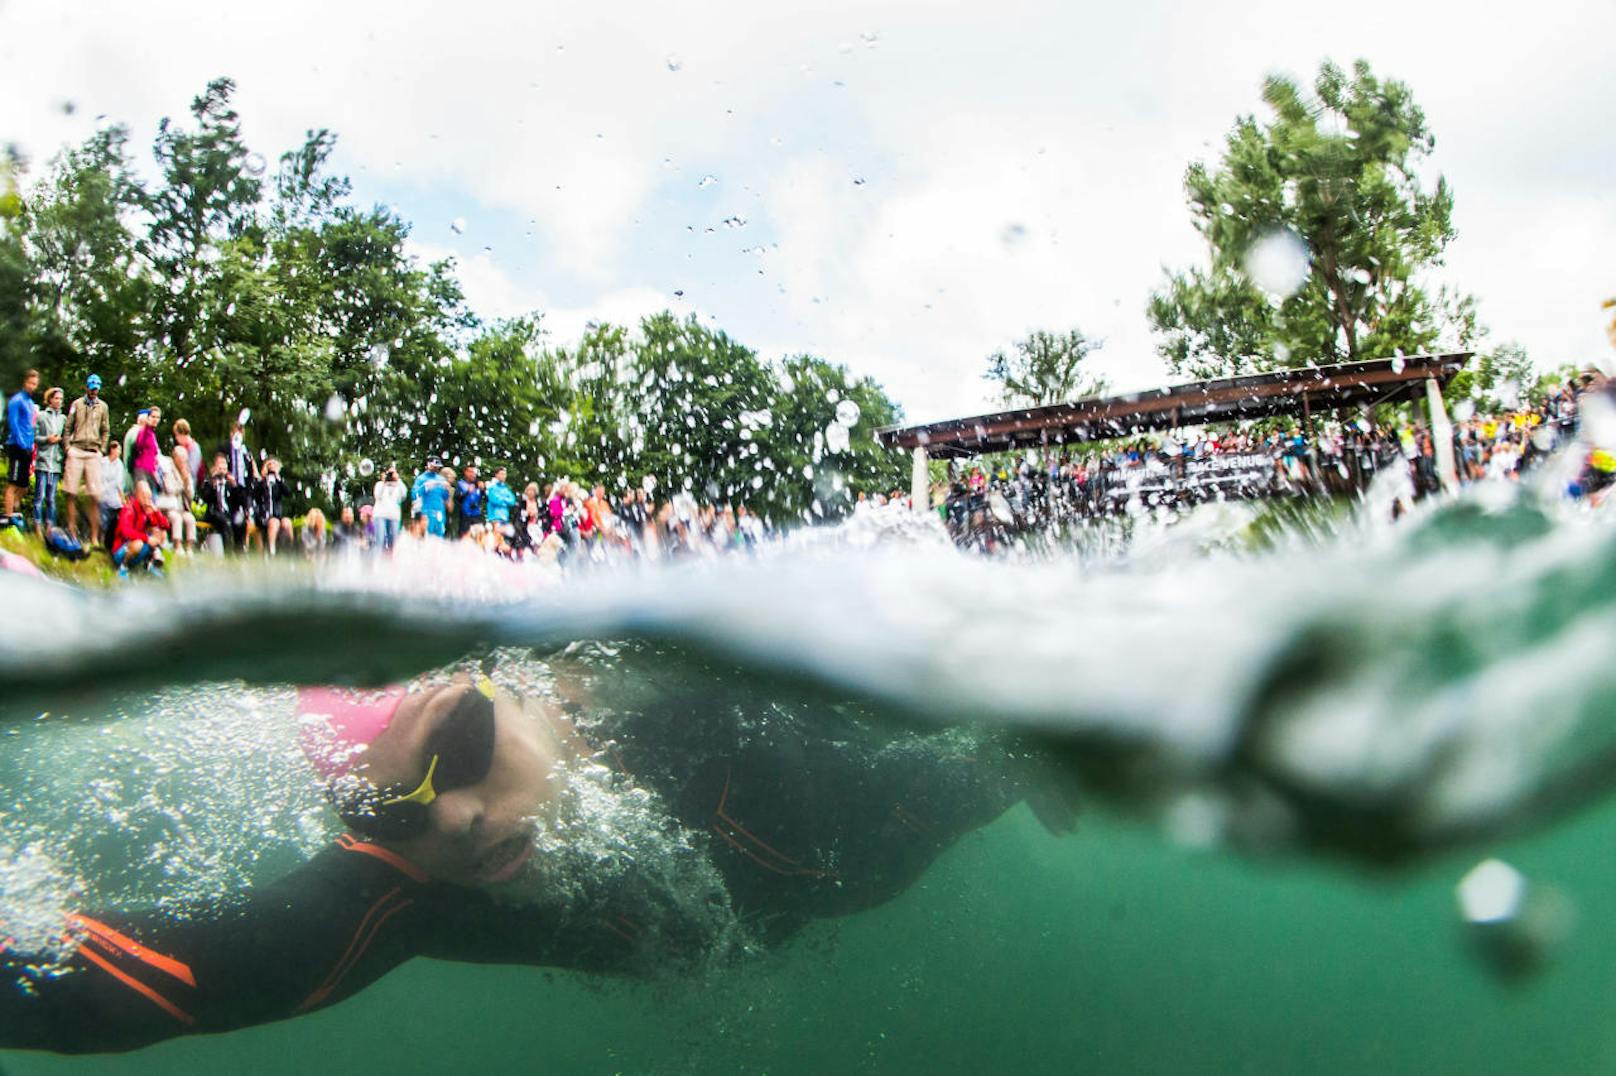 Um 6.40 Uhr tauchten die ersten Athleten ins Wasser ein - die Außentemperatur betrug nur 13,4 Grad.